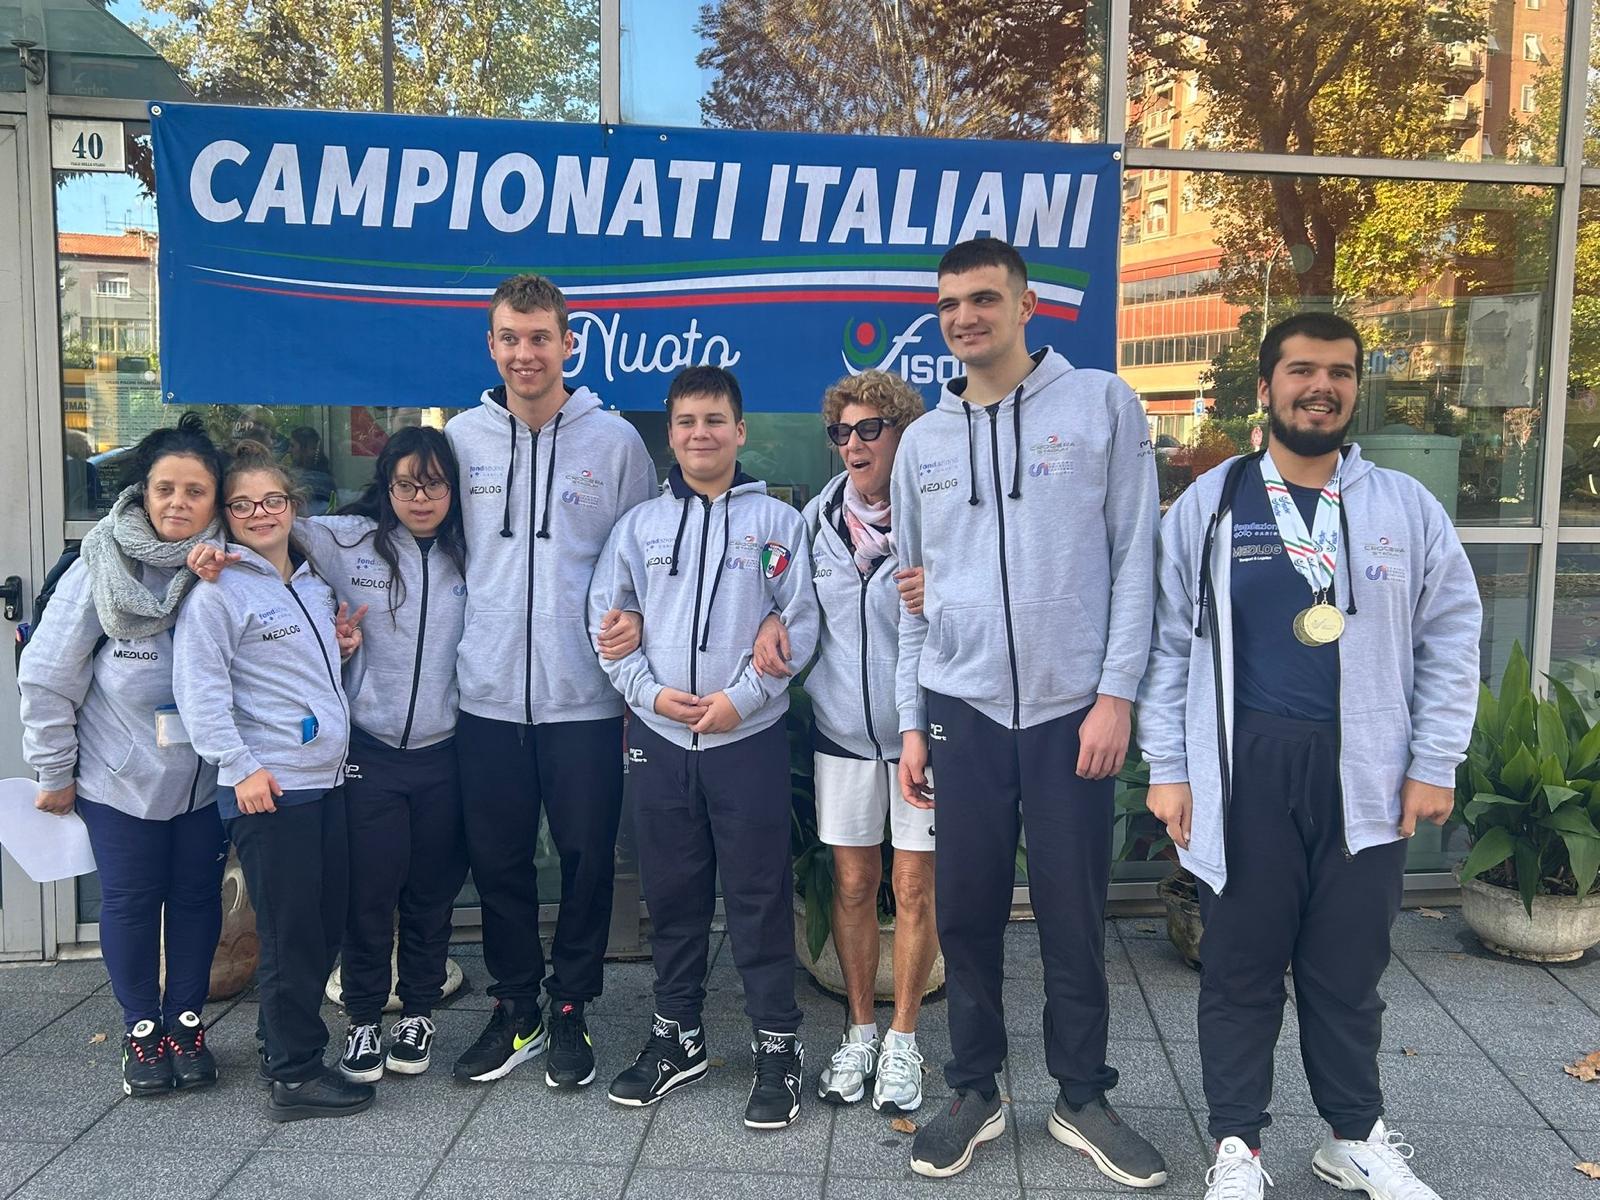 Alcuni ragazzi e ragazze davanti a un cartello con scritto "Campionati italiani"